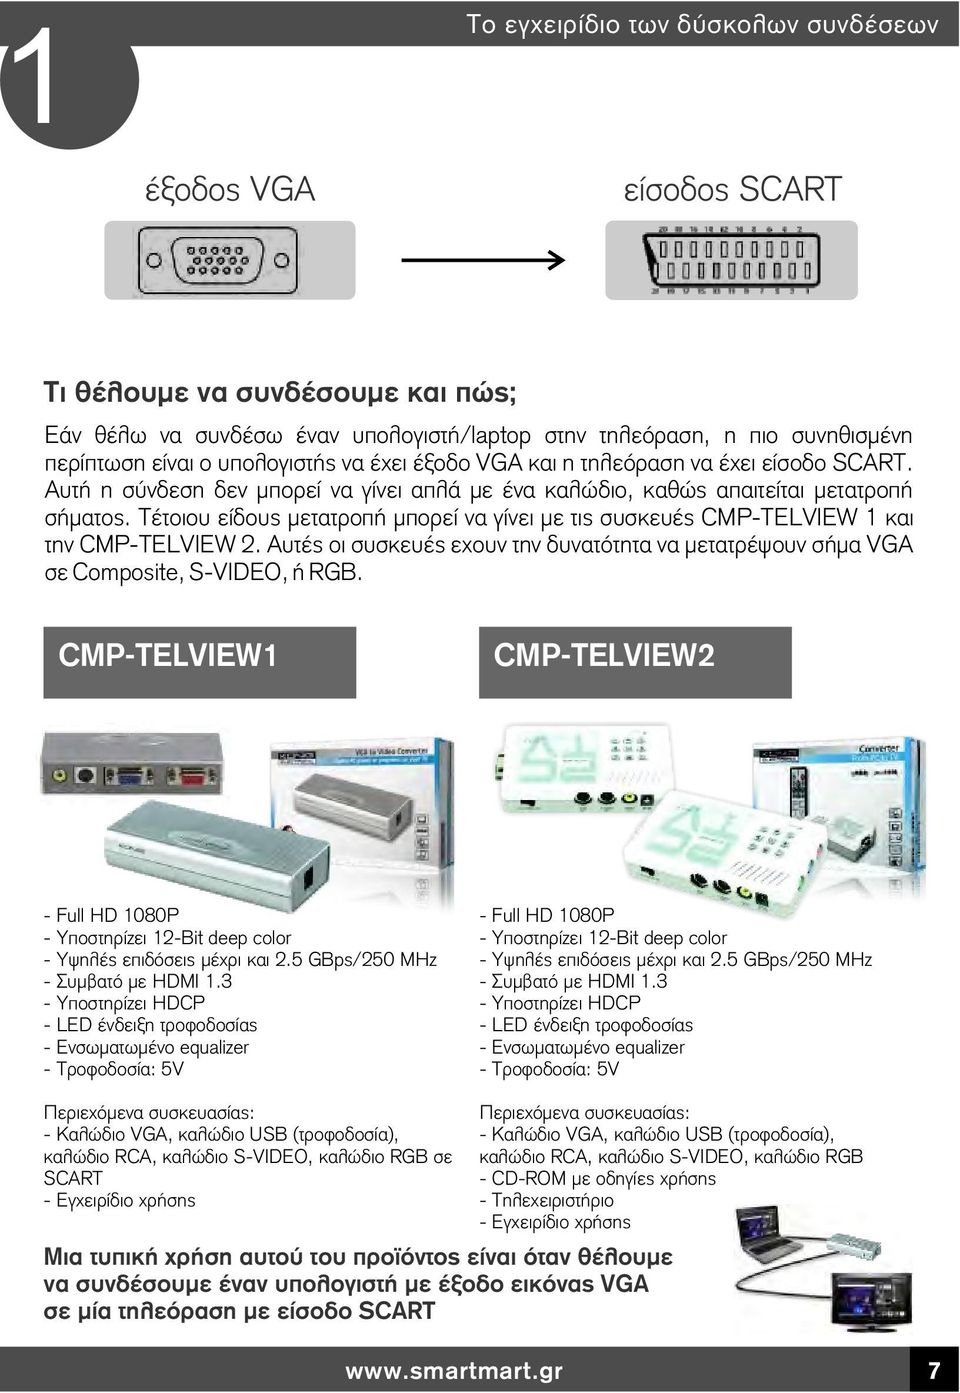 Τέτοιου είδους μετατροπή μπορεί να γίνει με τις συσκευές CMP-TELVIEW 1 και την CMP-TELVIEW 2. Αυτές οι συσκευές εχουν την δυνατότητα να μετατρέψουν σήμα VGA σε Composite, S-VIDEO, ή RGB.